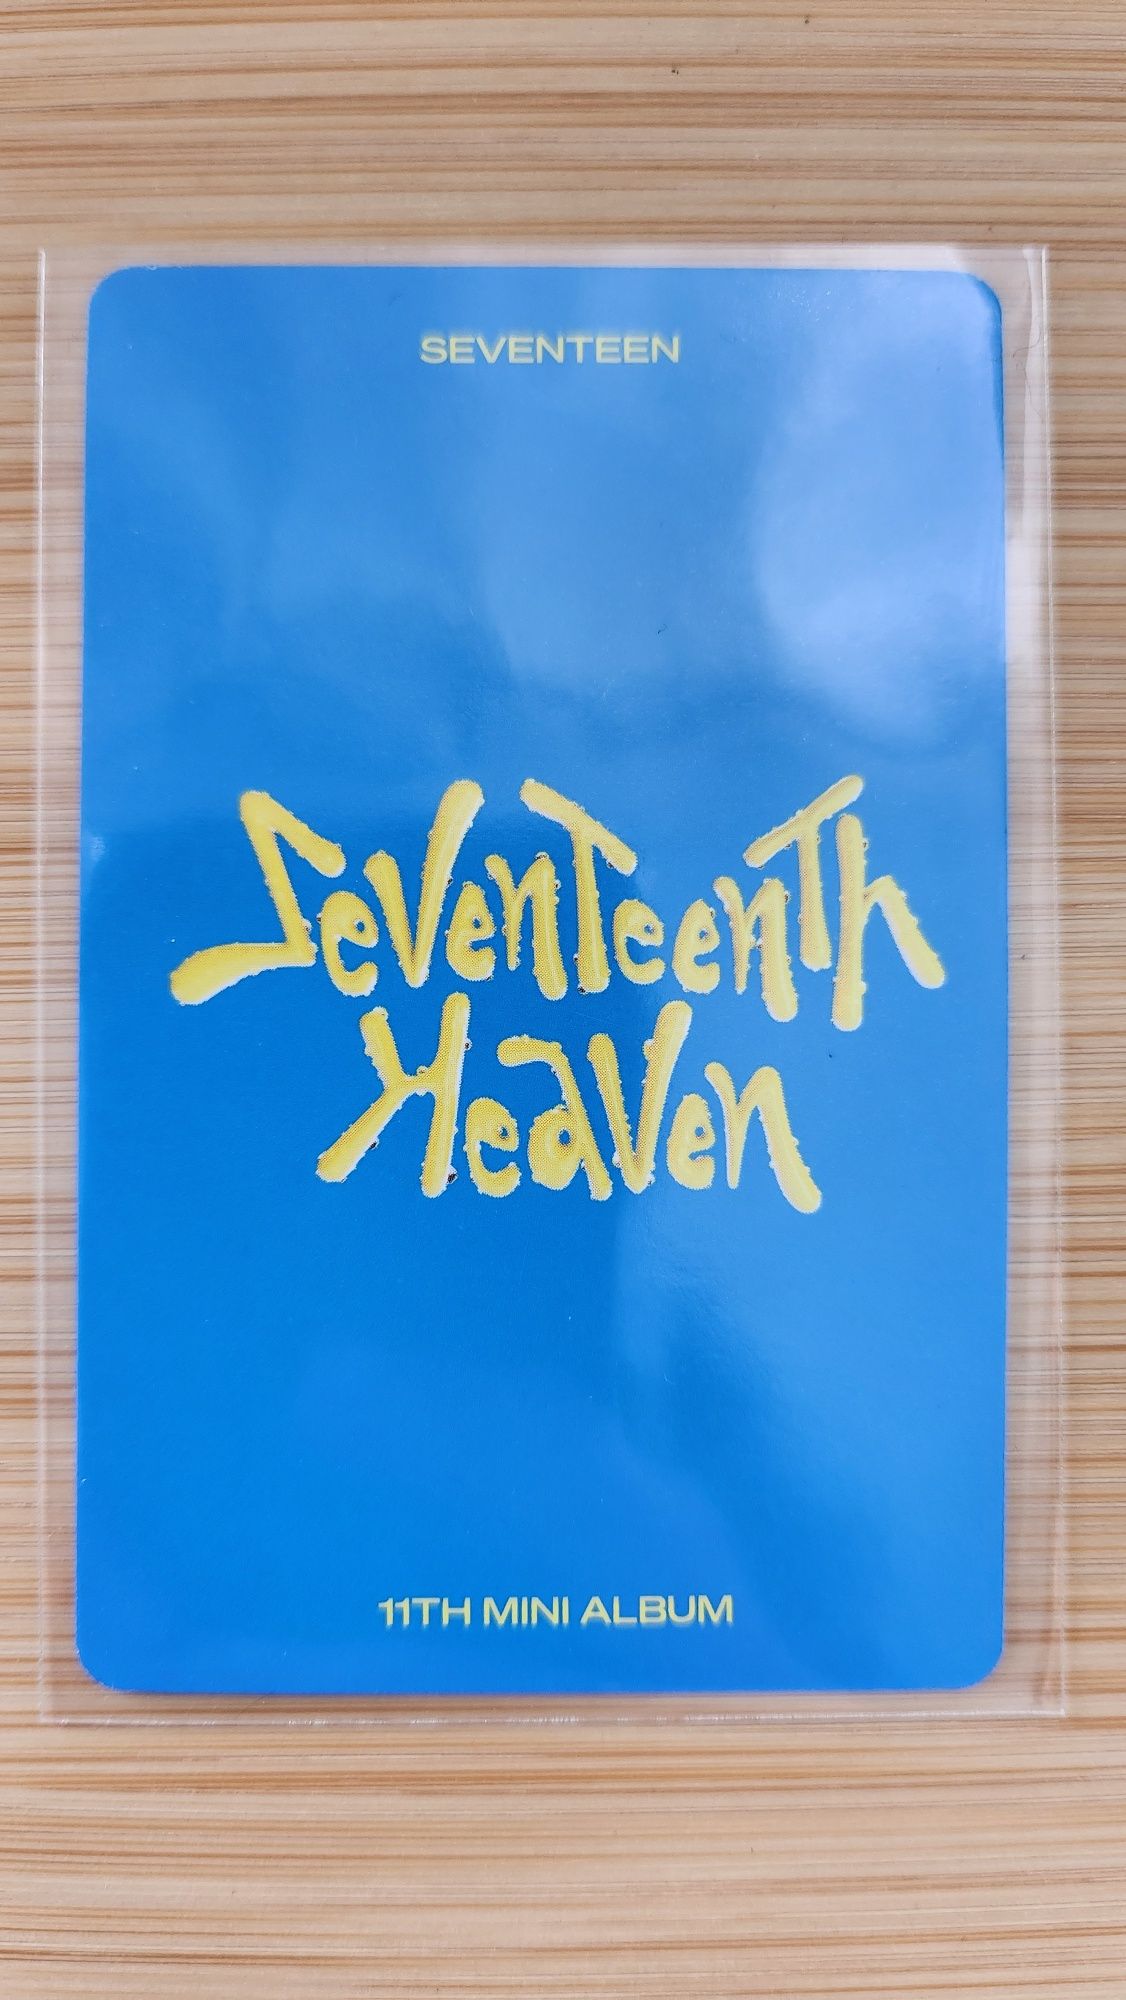 Seventeen DK Seventeenth Heaven kpop